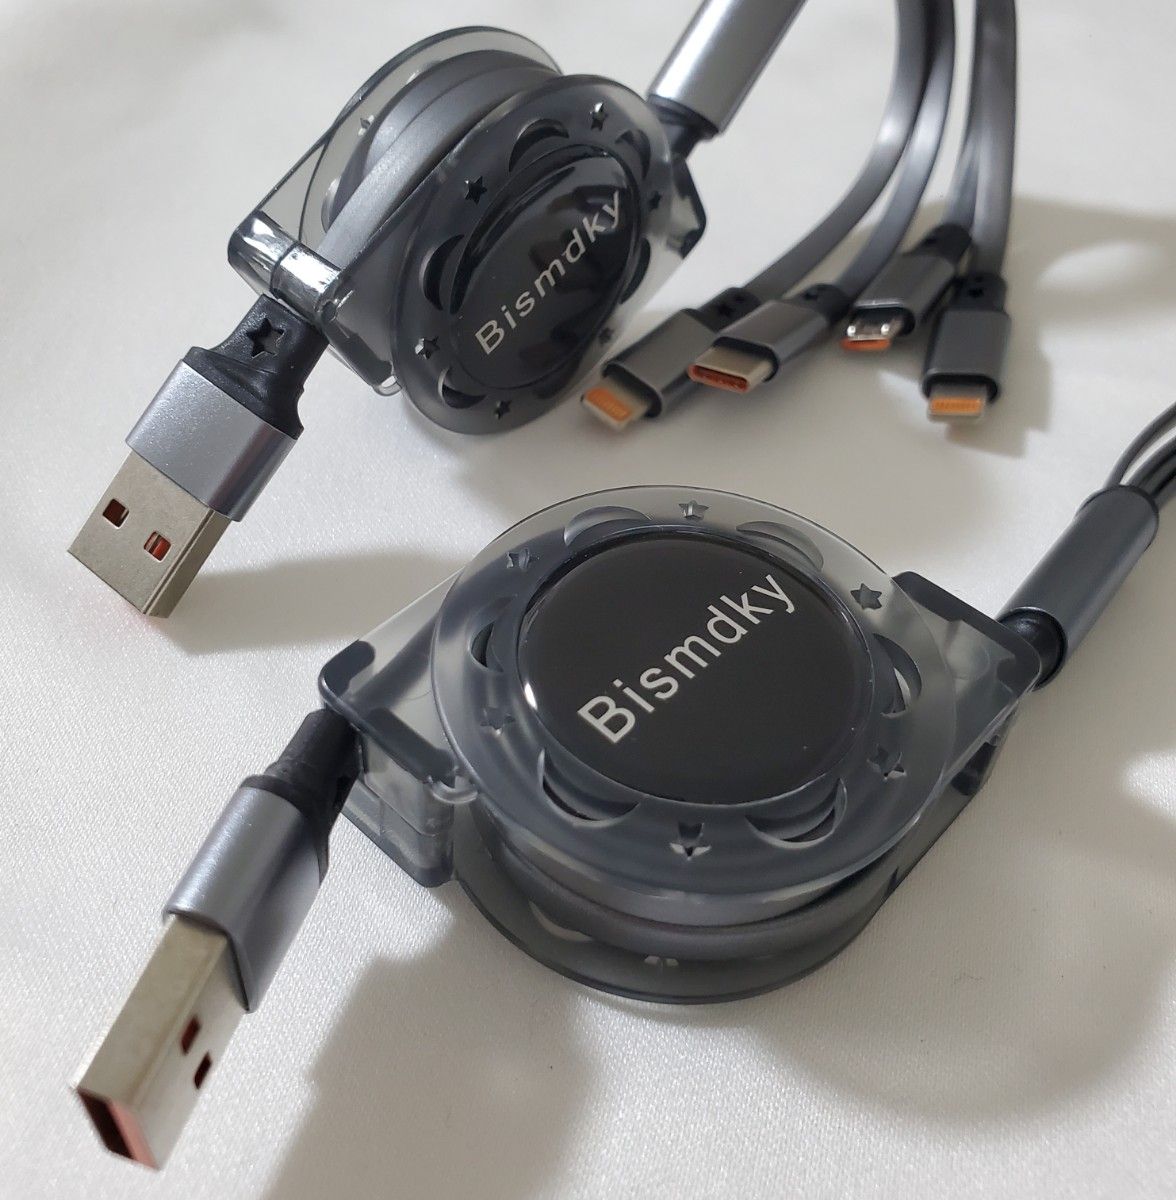 2本セット Bismdky 4 in 1 USB巻き取り充電ケーブル 同時給電可能